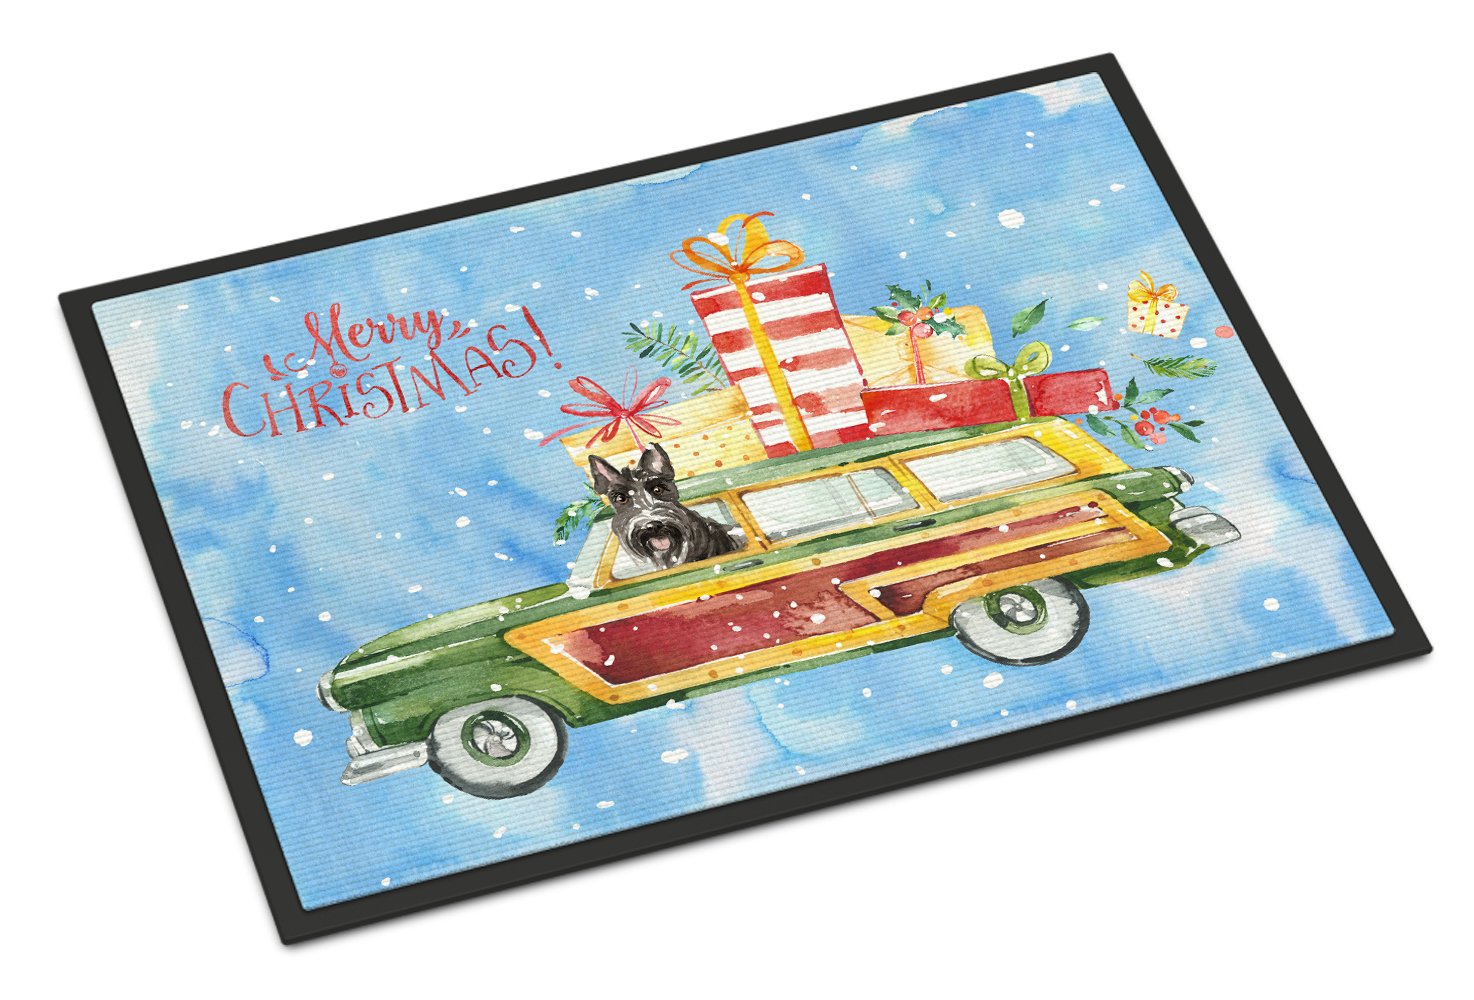 Merry Christmas Scottish Terrier Indoor or Outdoor Mat 24x36 CK2420JMAT by Caroline's Treasures